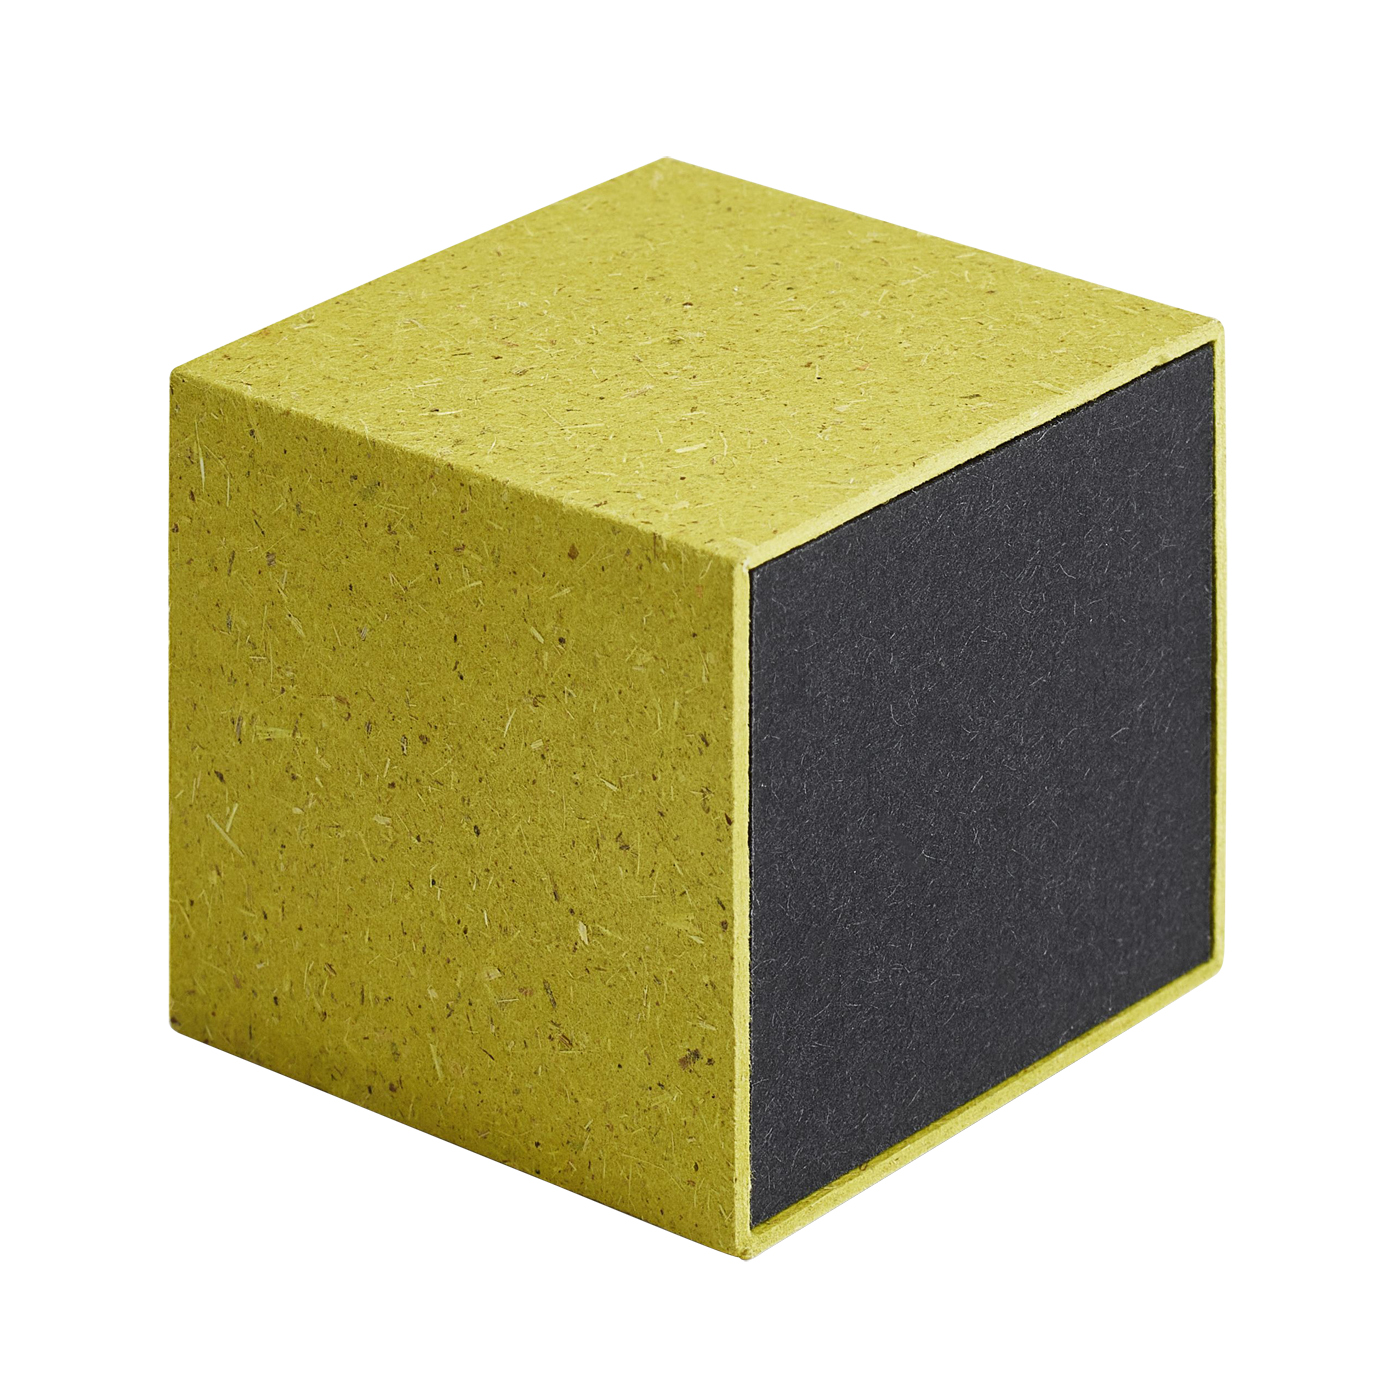 PICA-Design Schmucketui "Greenbox", grün/schwarz, 42 x 40 x 40 mm - 1 Stück